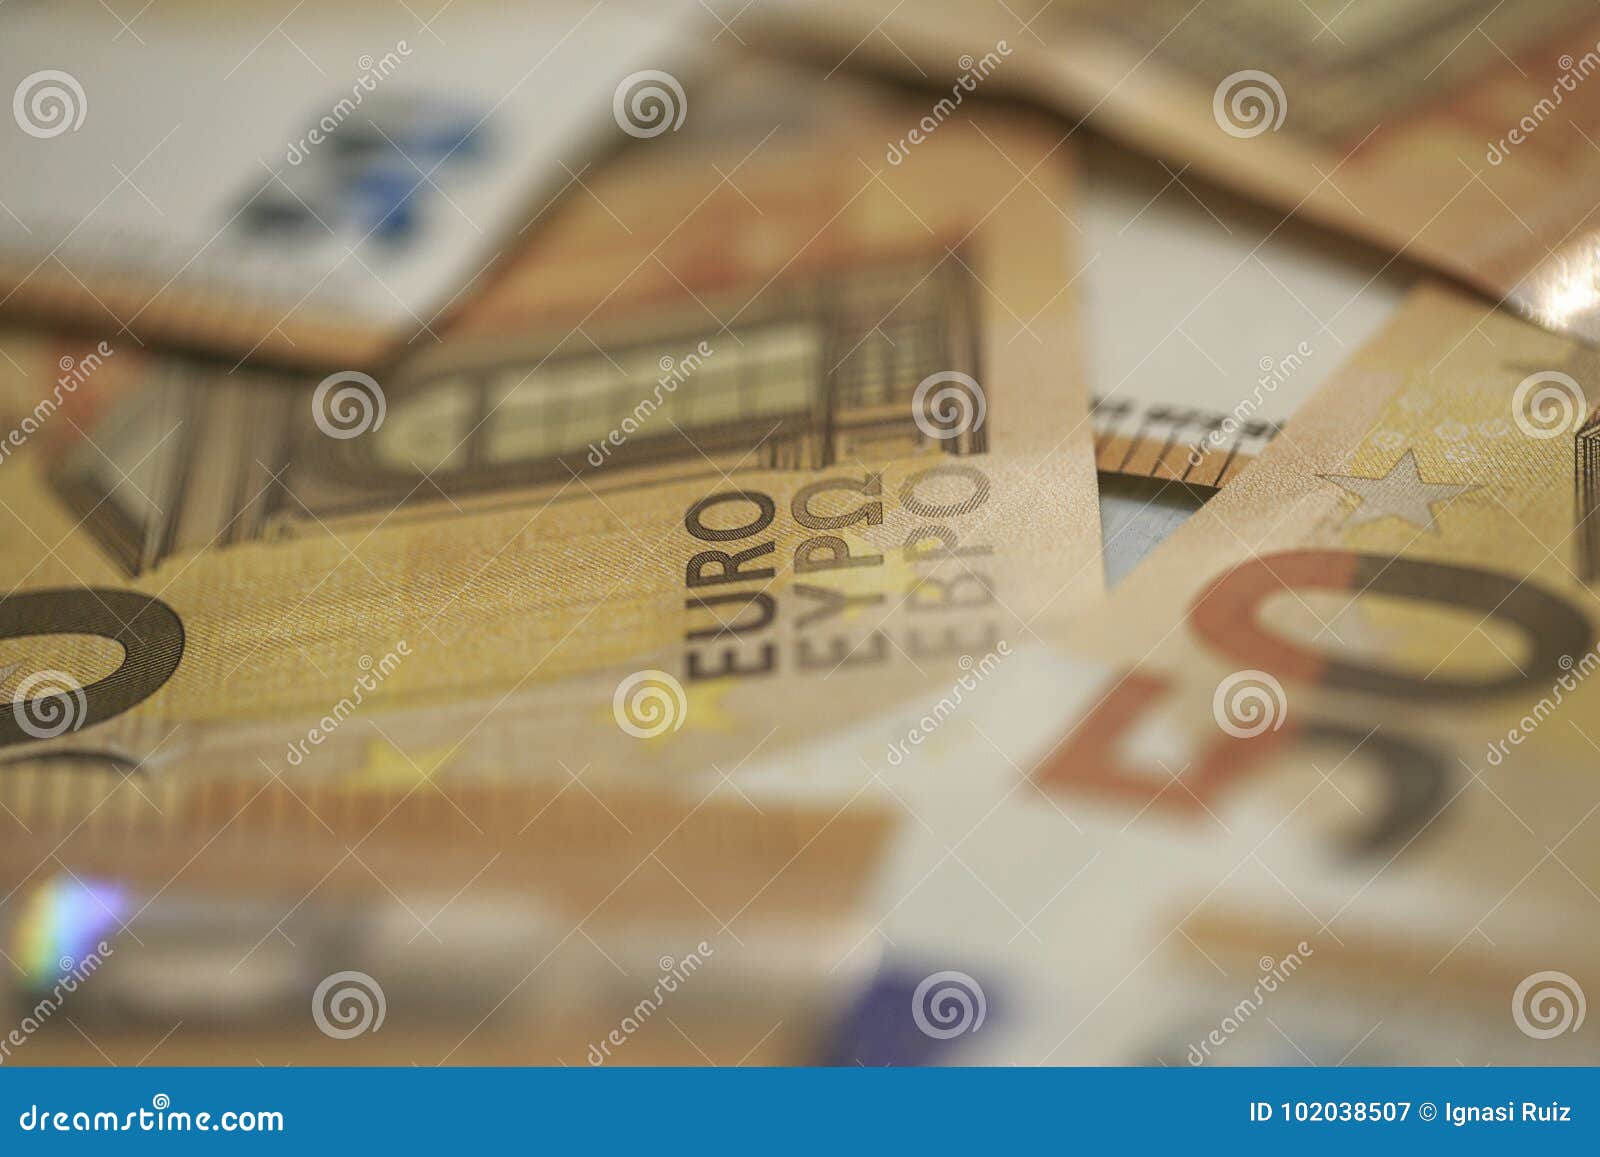 50 euros banknotes